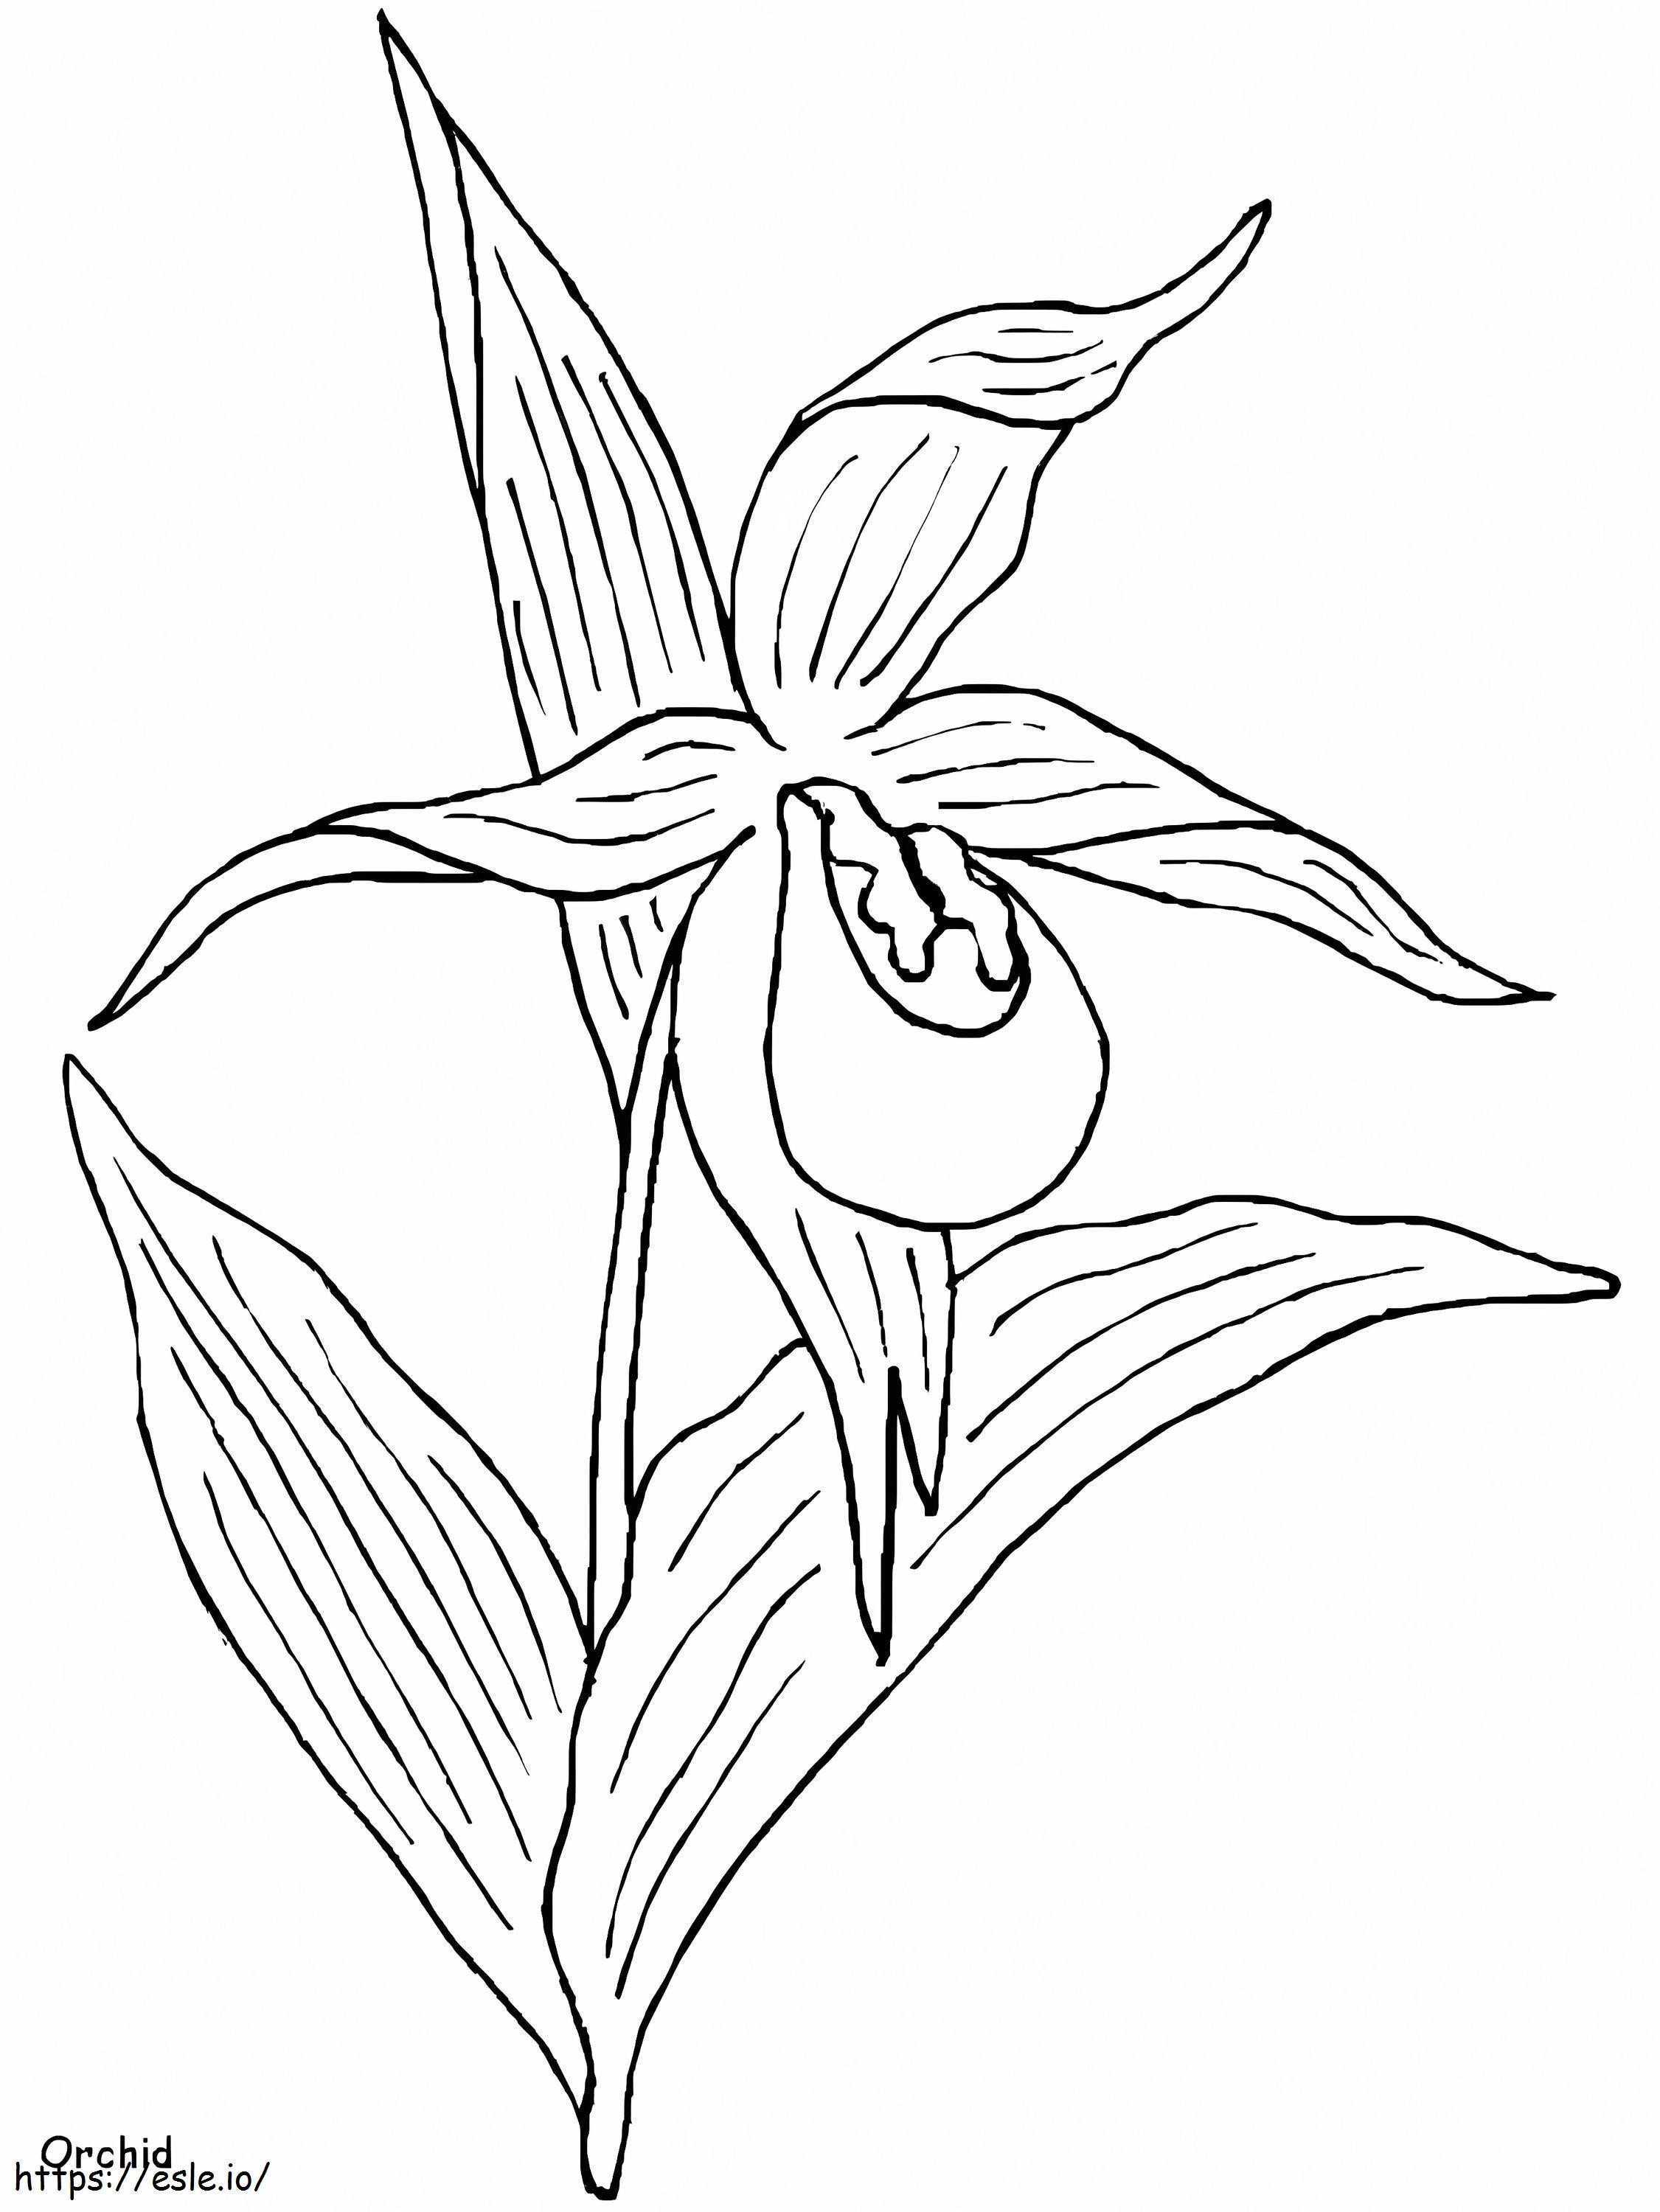 Coloriage Orchidée gratuite à imprimer dessin